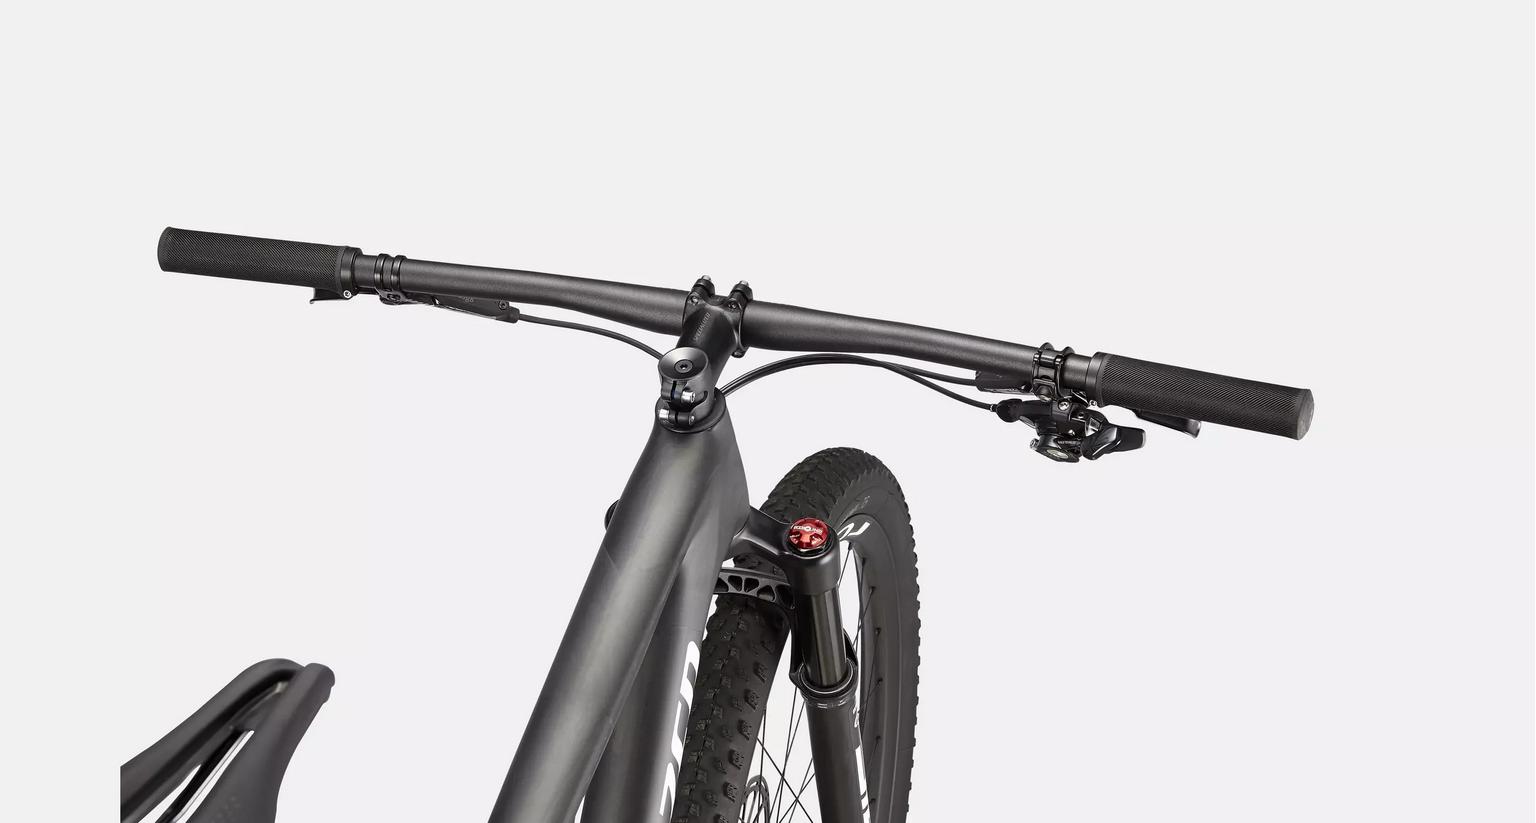 specialized specialized bici epic expert carbonio nero bianco